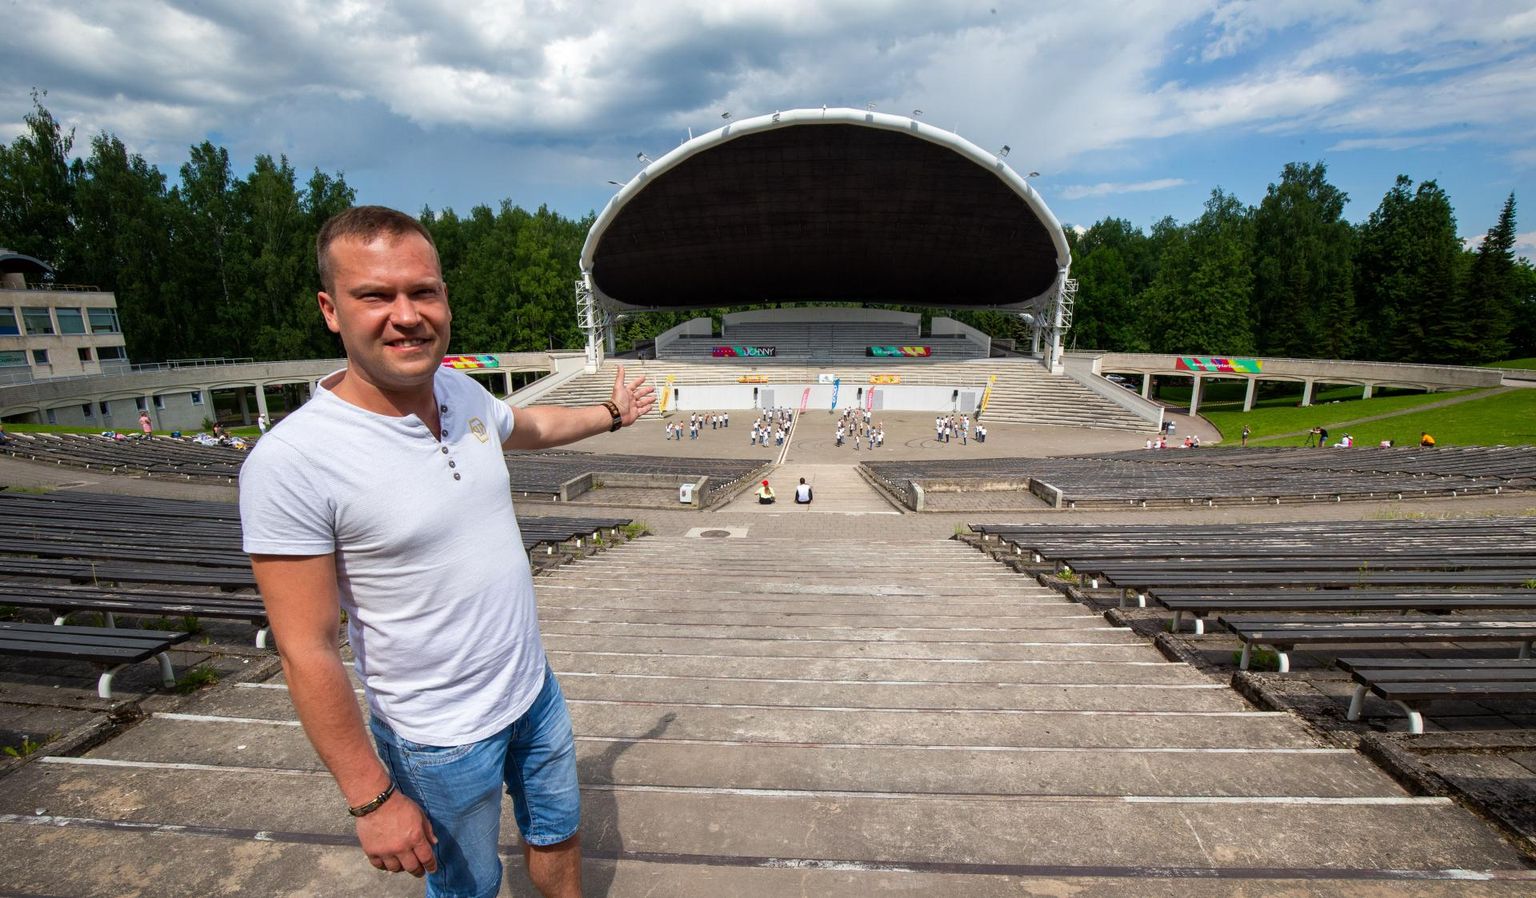 Jaanipeo korraldaja Silvo Piir tõdes eile lauluväljakul Tartu Postimehega vesteldes, et tal on lihtsam ala pooltühjaks jätta kui hakata kiirtestimist korraldama.